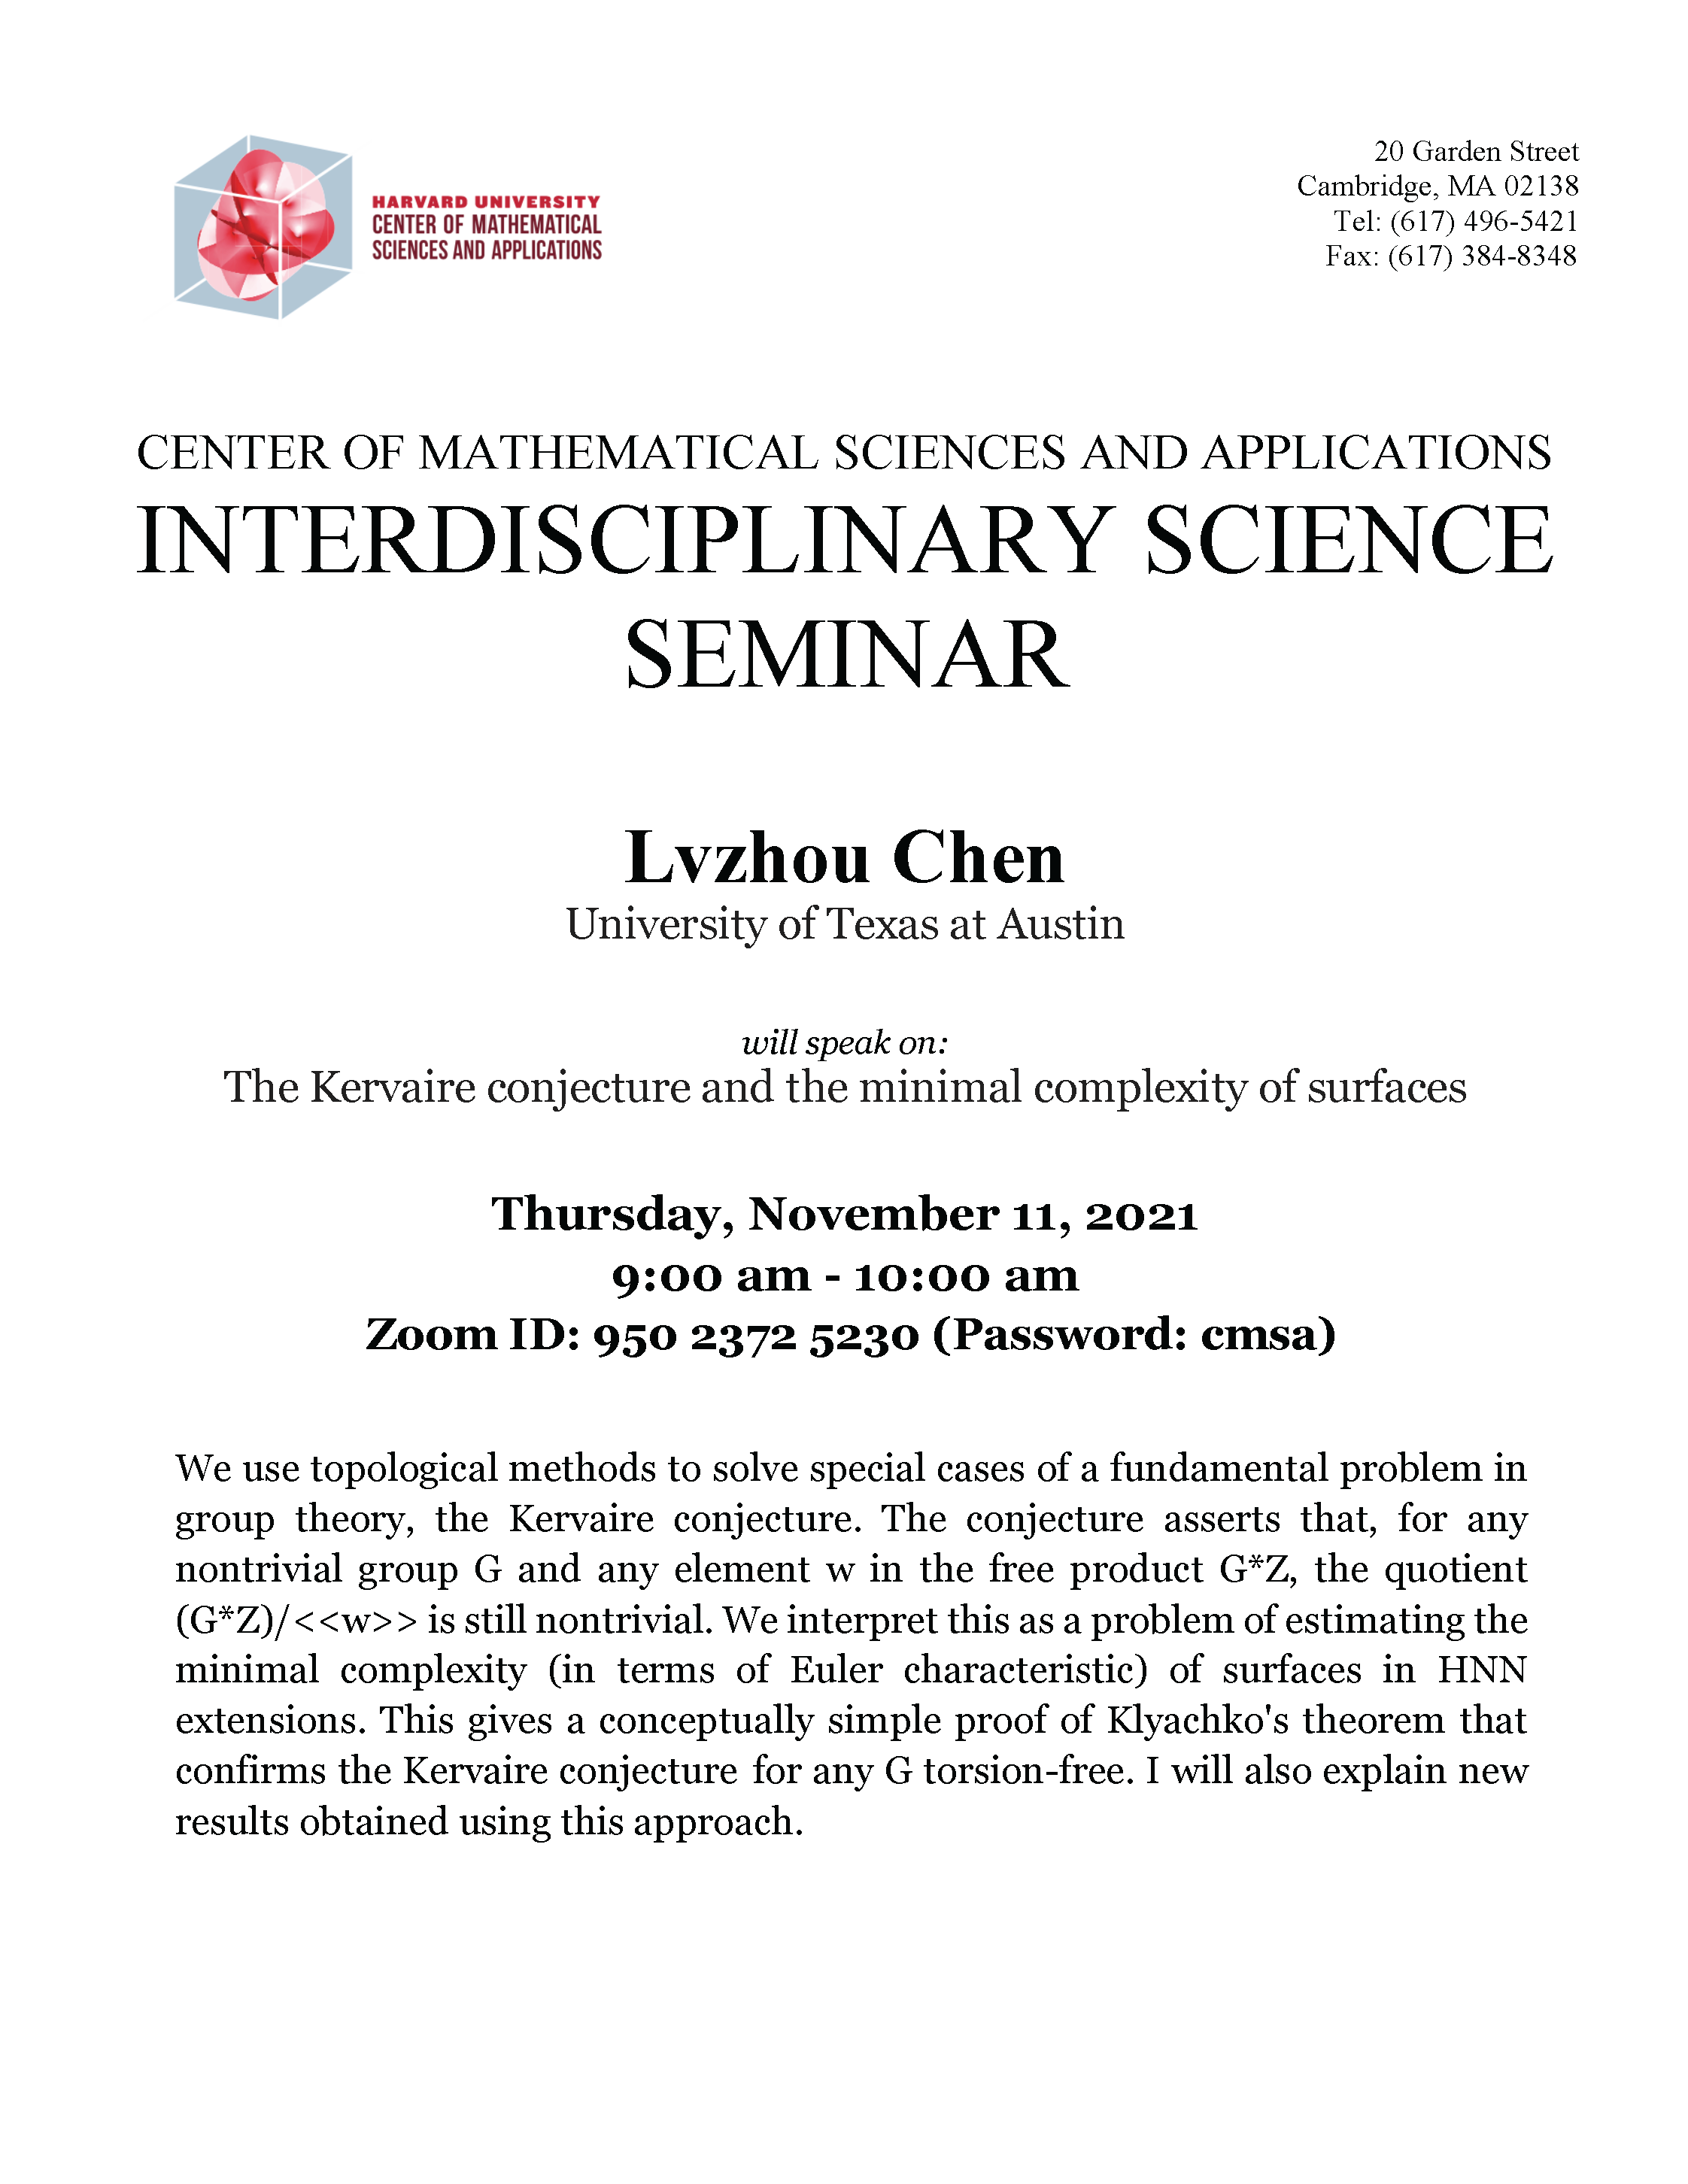 CMSA-Interdisciplinary-Science-Seminar-11.11.21